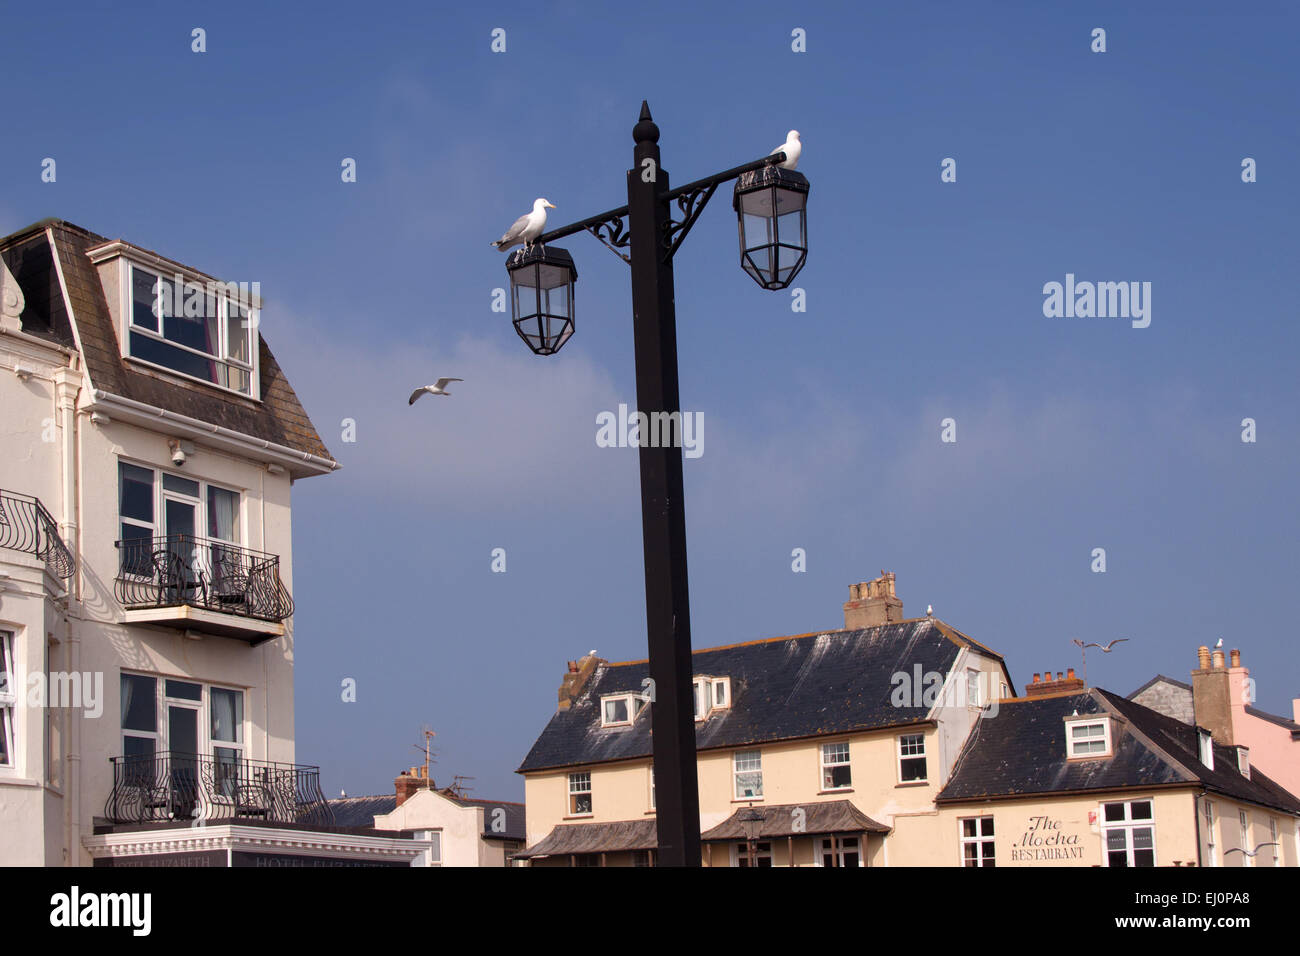 Möwen auf der Esplanade in Sidmouth, Devon - ein ständiges Problem in der Stadt. Falknerei wird verwendet, um sie zu verhindern. Stockfoto